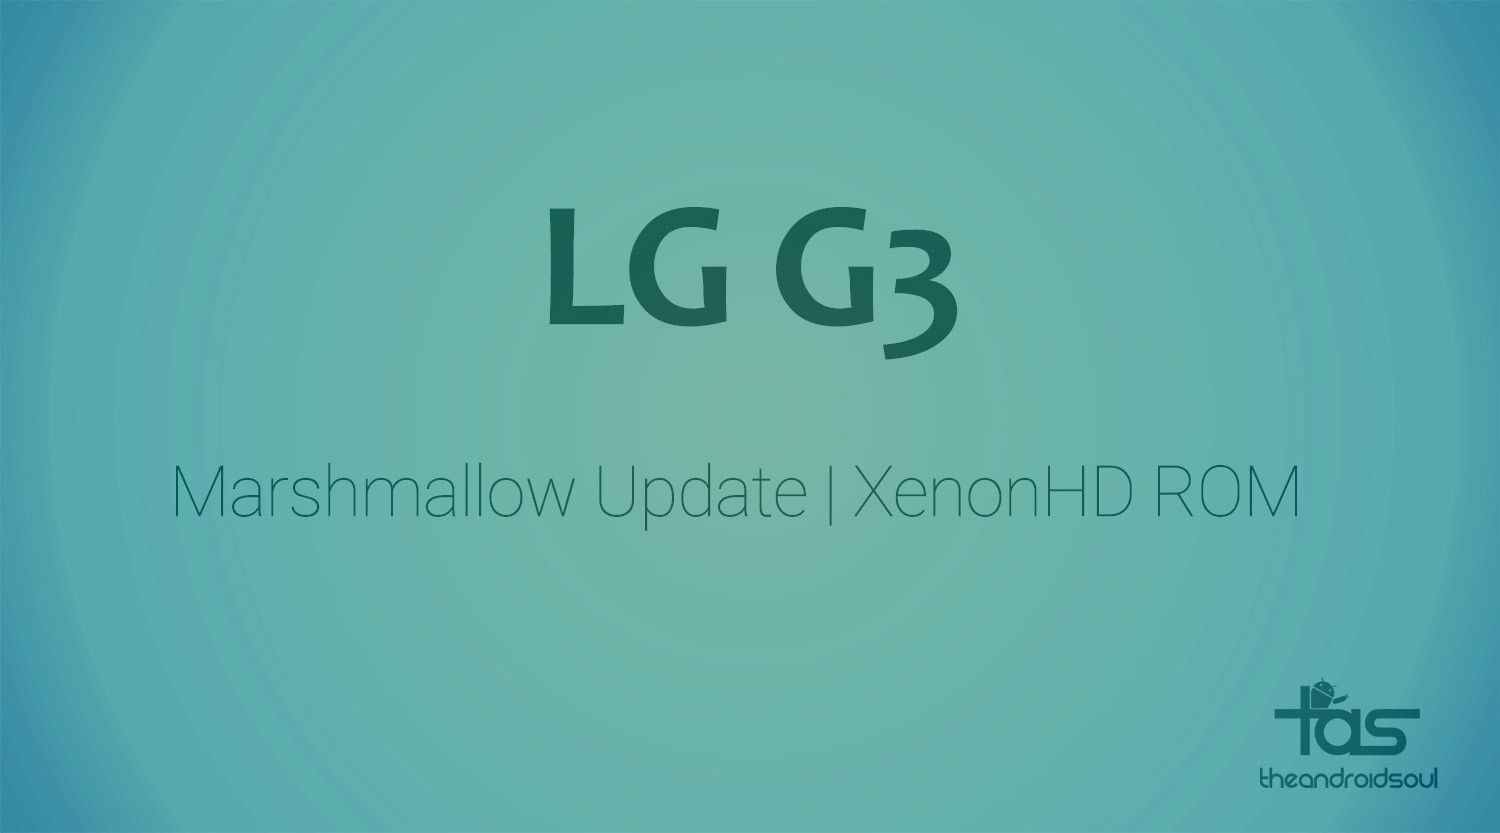 No hay LG G3 CM13 todavía, pero la actualización de Marshmallow está disponible a través de XenonHD ROM